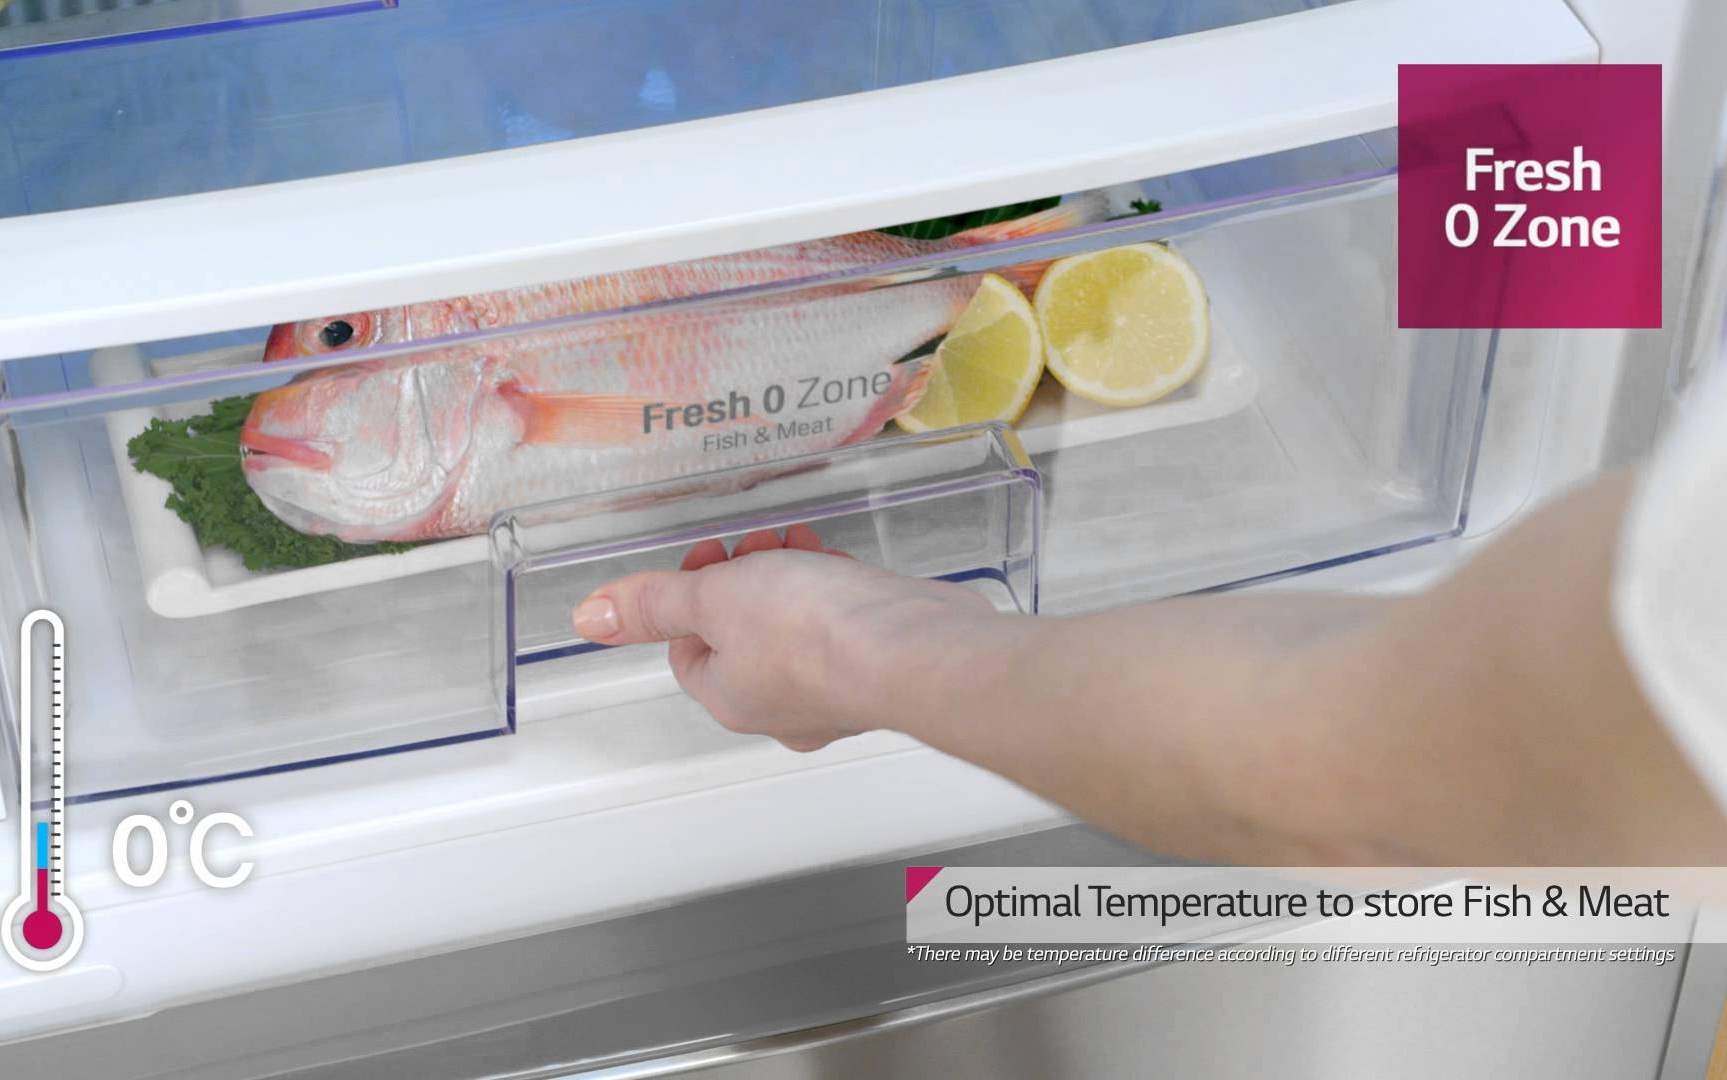 Зона свежести влажная. Холодильник LG Opti Fresh Zone. Зона свежести. Fresh Zone в холодильнике что это. Холодильник LG С Фреш зоной.